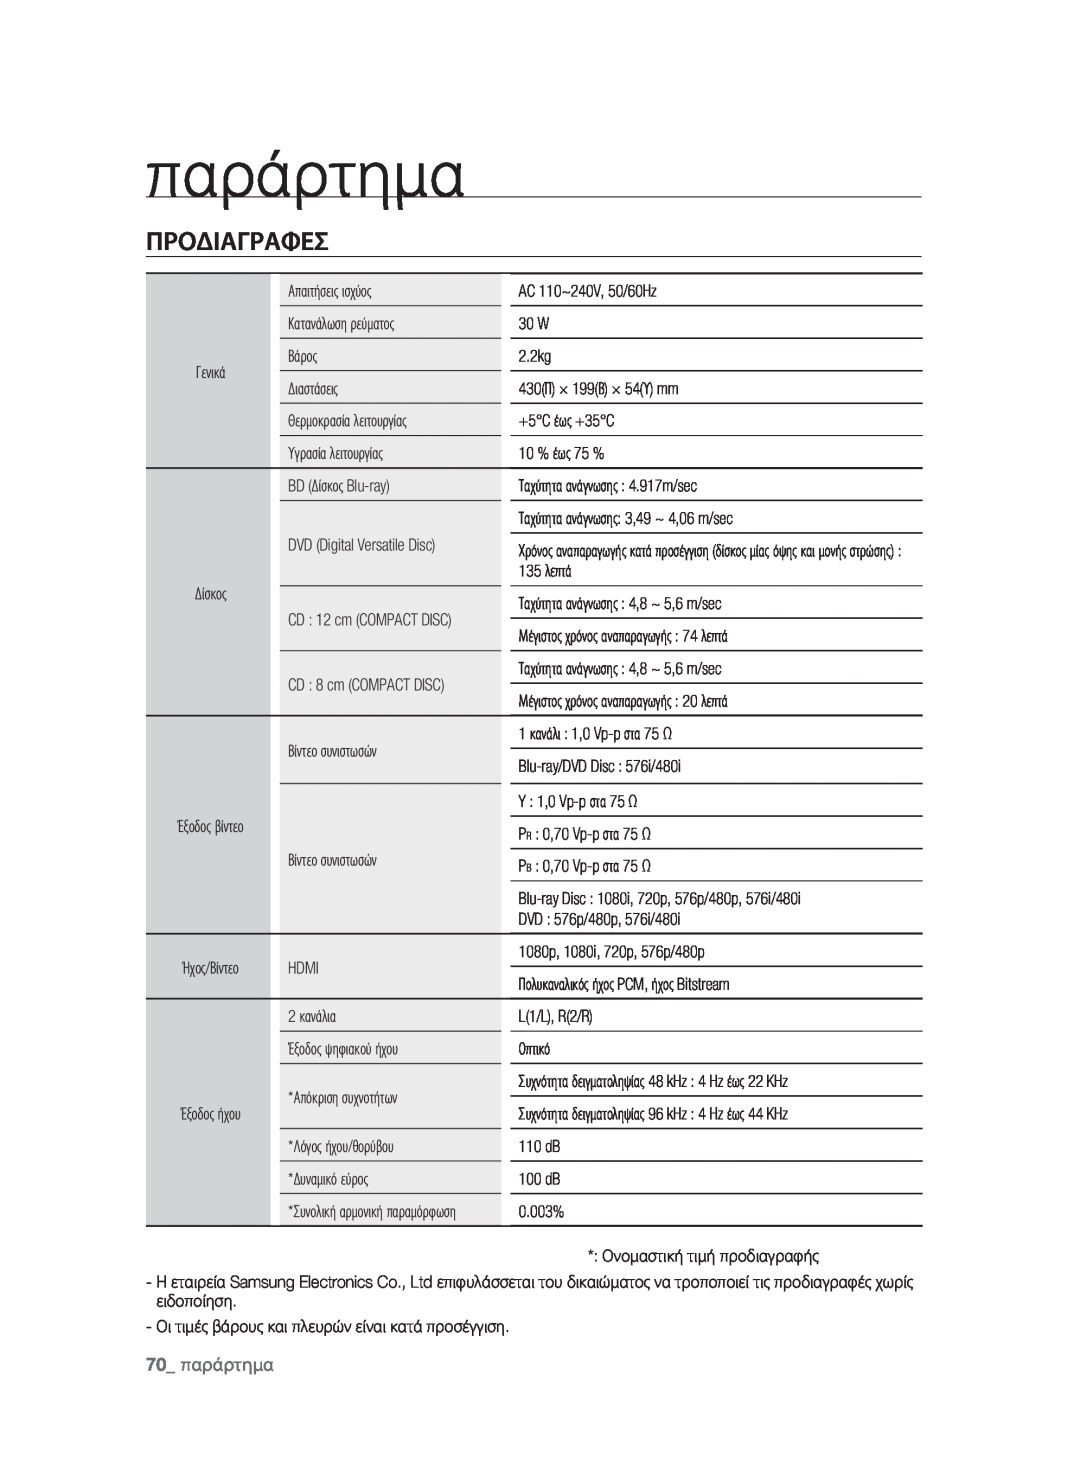 Samsung BD-P1580/EDC manual Προδιαγραφεσ, 70 παράρτημα 